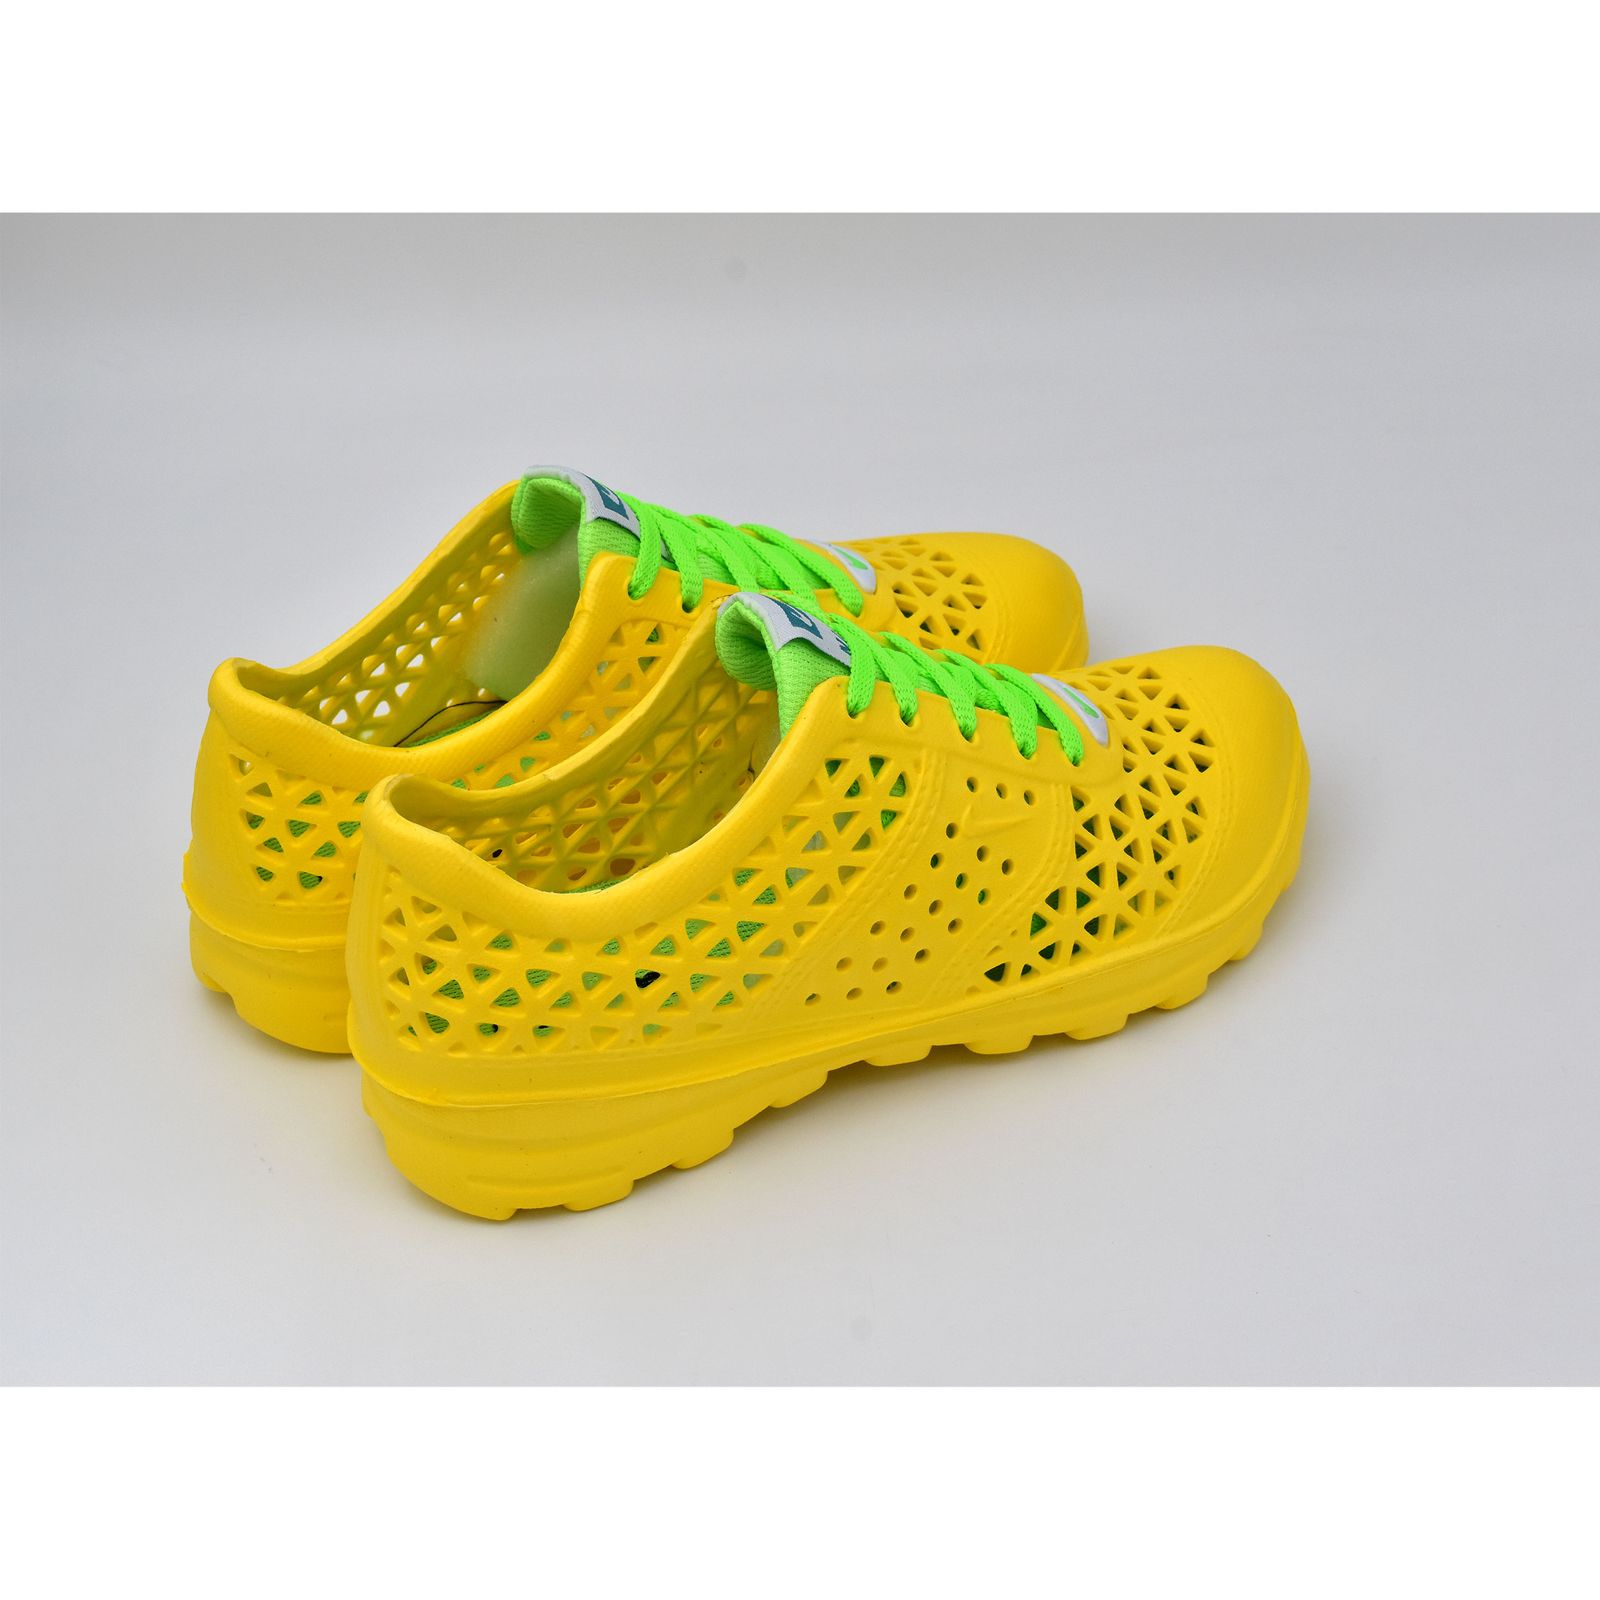  کفش ورزش های آبی زنانه نسیم مدل مرجان کد 8715 -  - 5